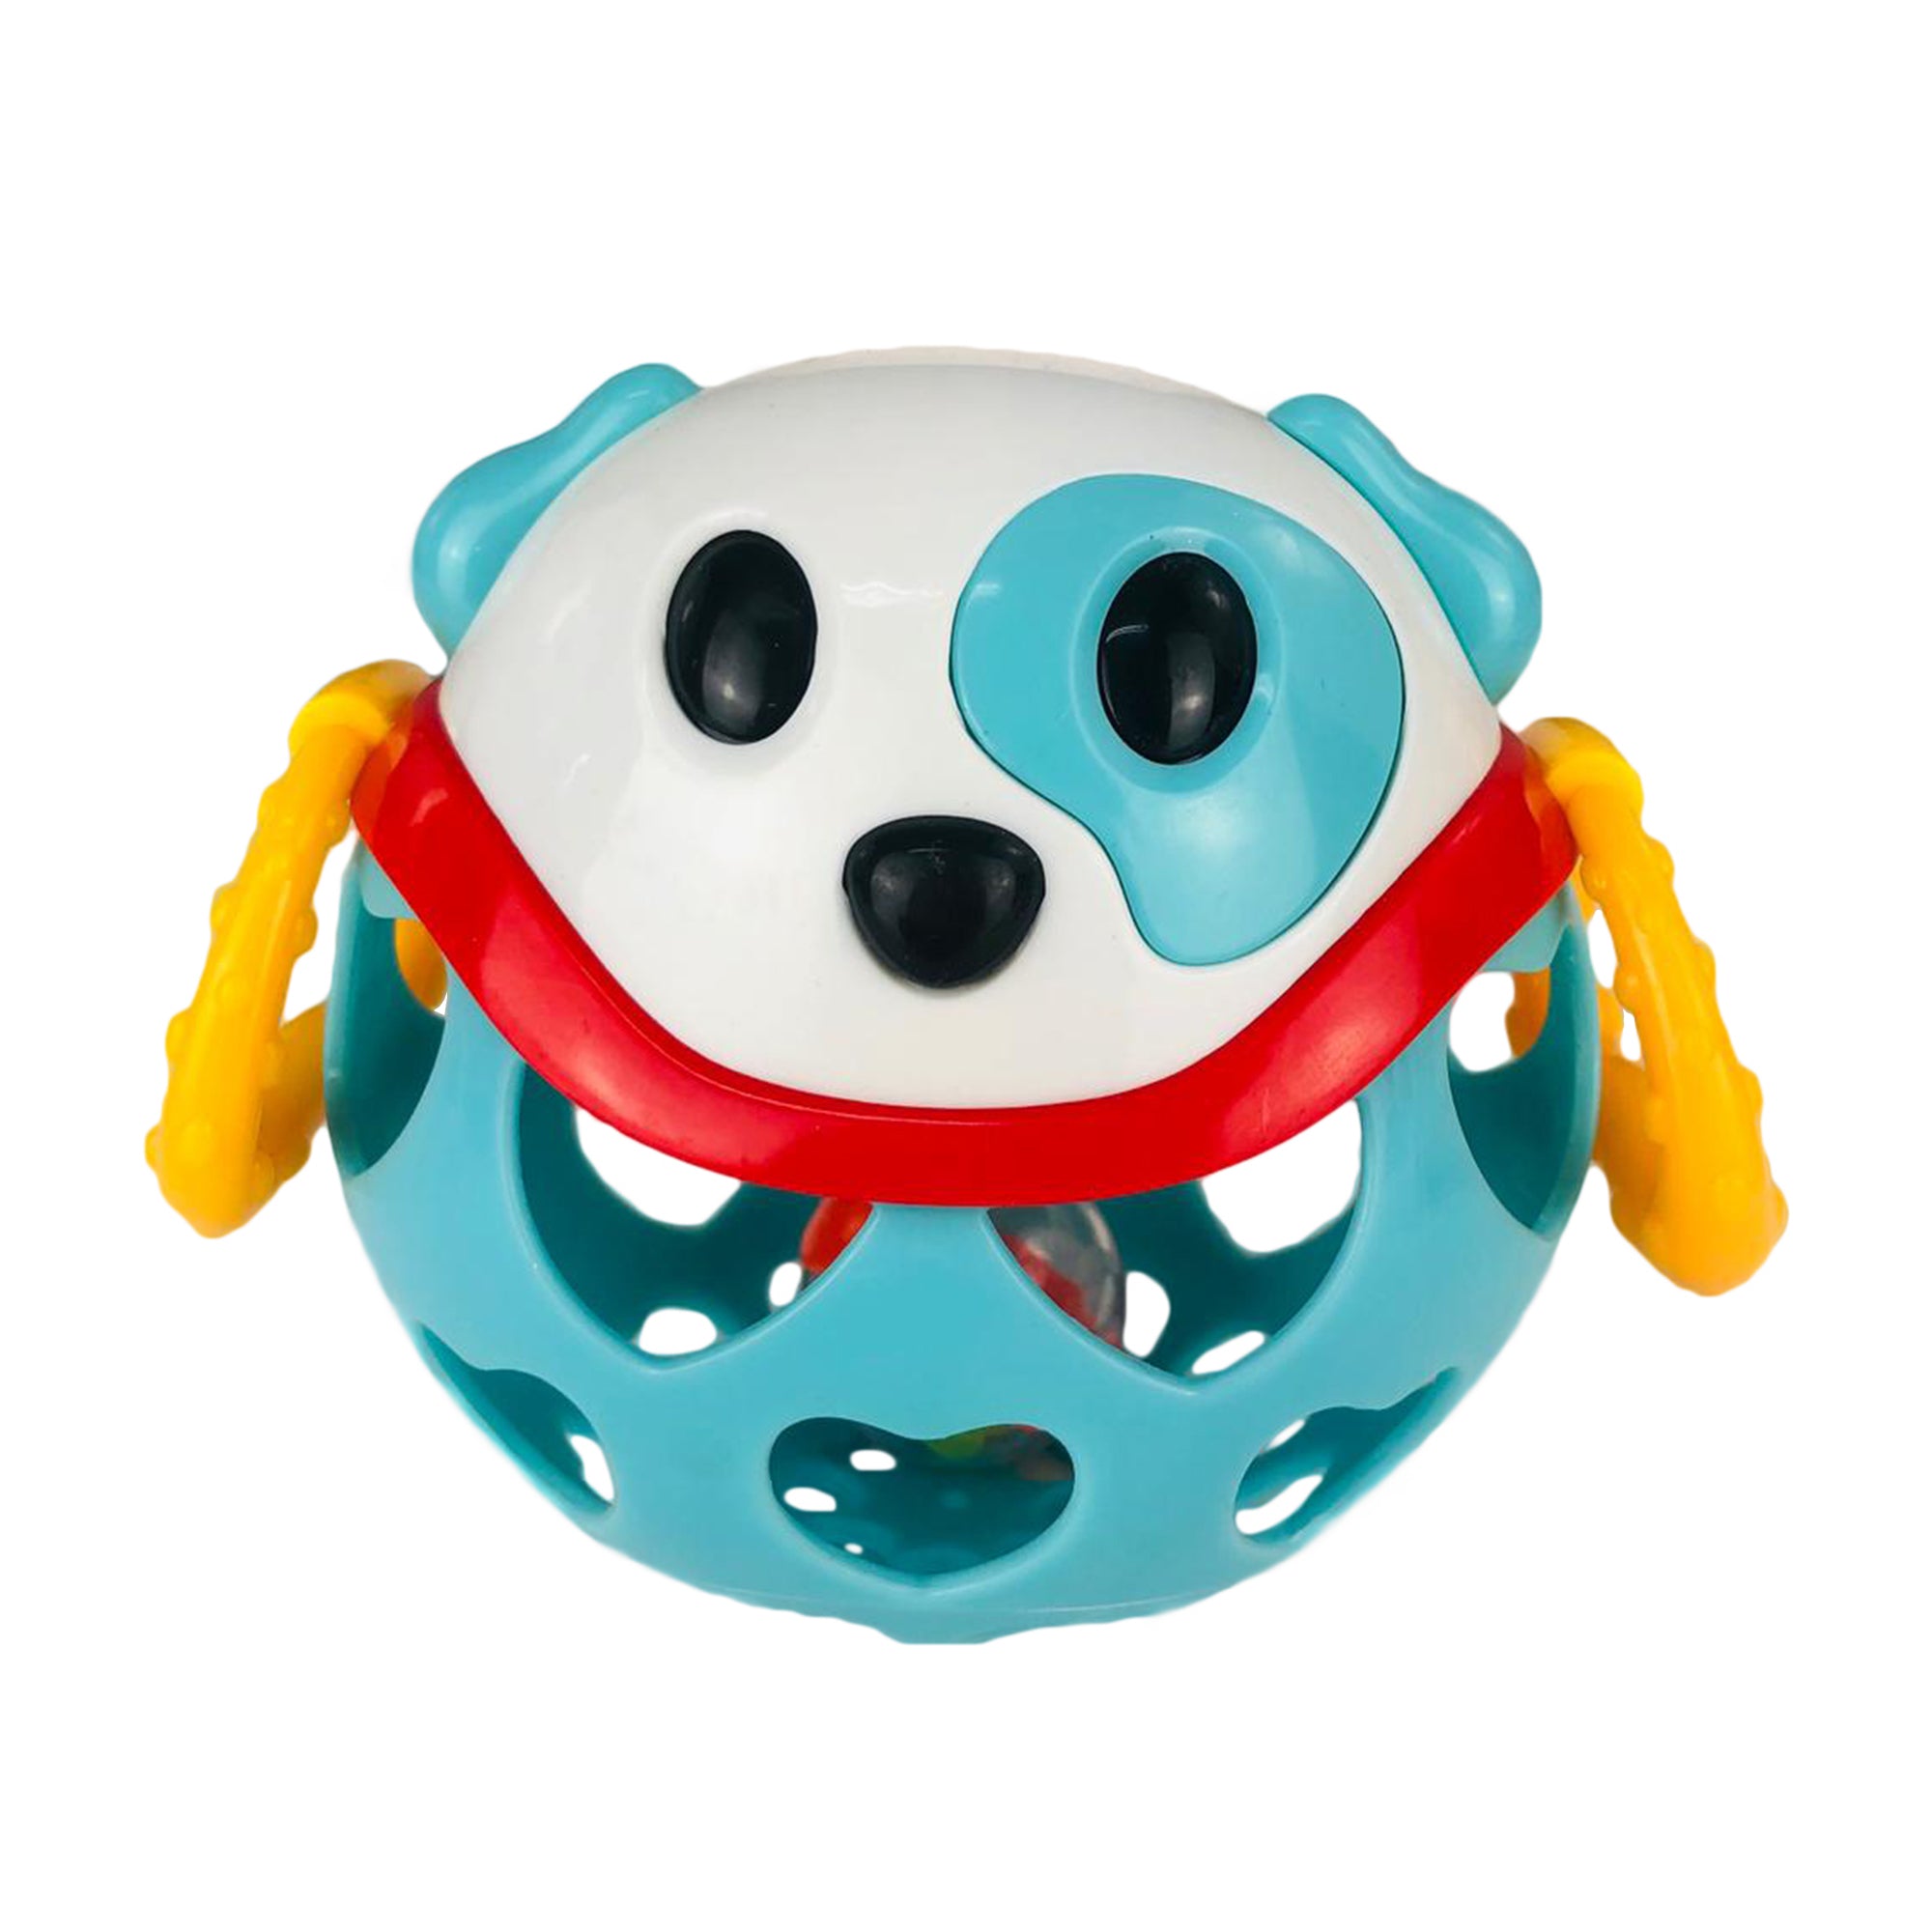 Giocattolo creativo per bambini neonato BamBam cane a sfera con sonaglio 2887